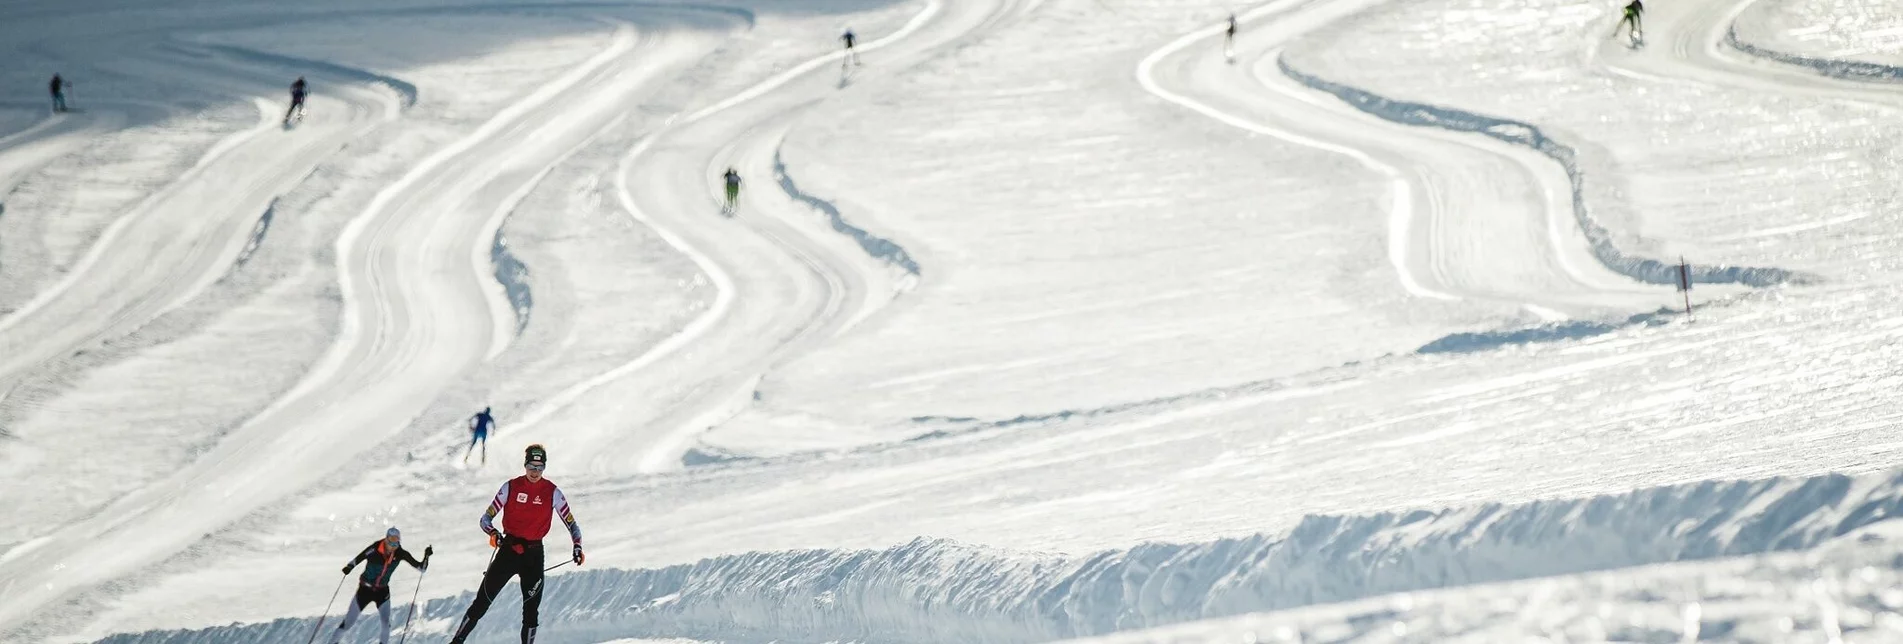 Cross-Country Skiing Dachstein Glacier - Hallstatt XC Trail - Touren-Impression #1 | © Erlebnisregion Schladming-Dachstein